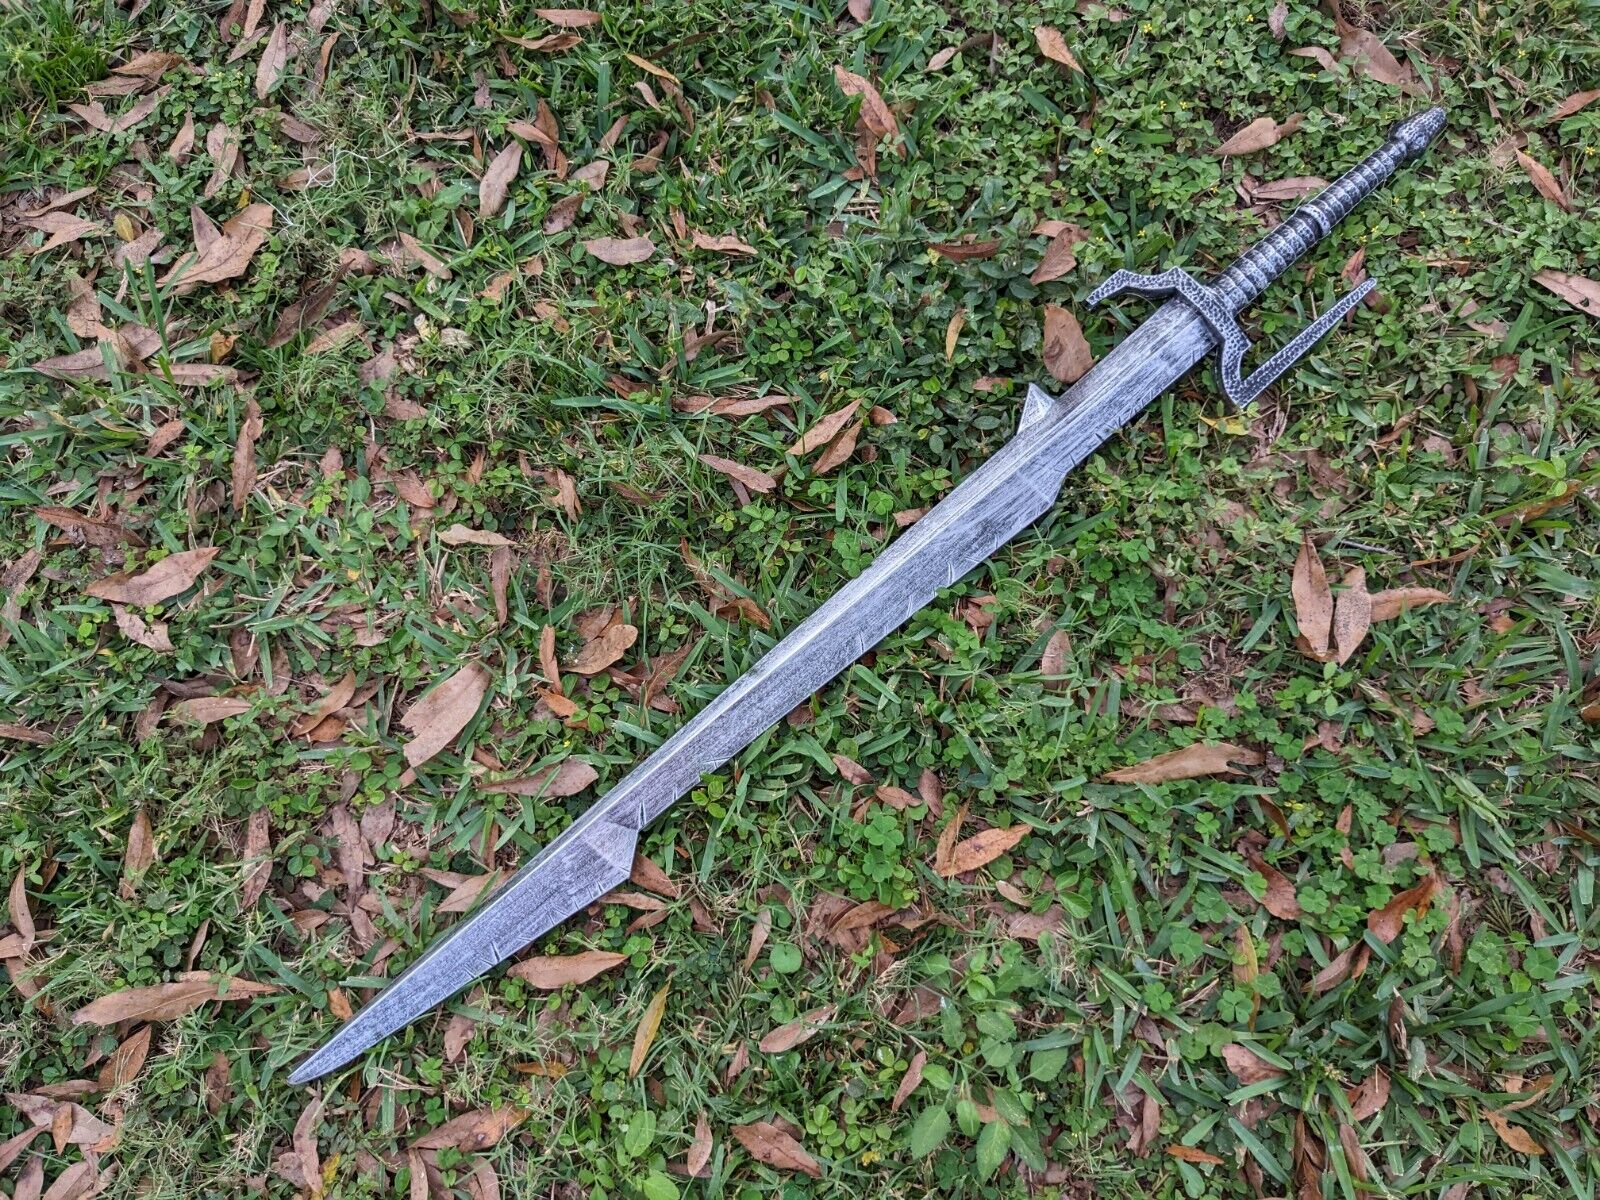 Polyurethane Foam Witcher Saber Sword